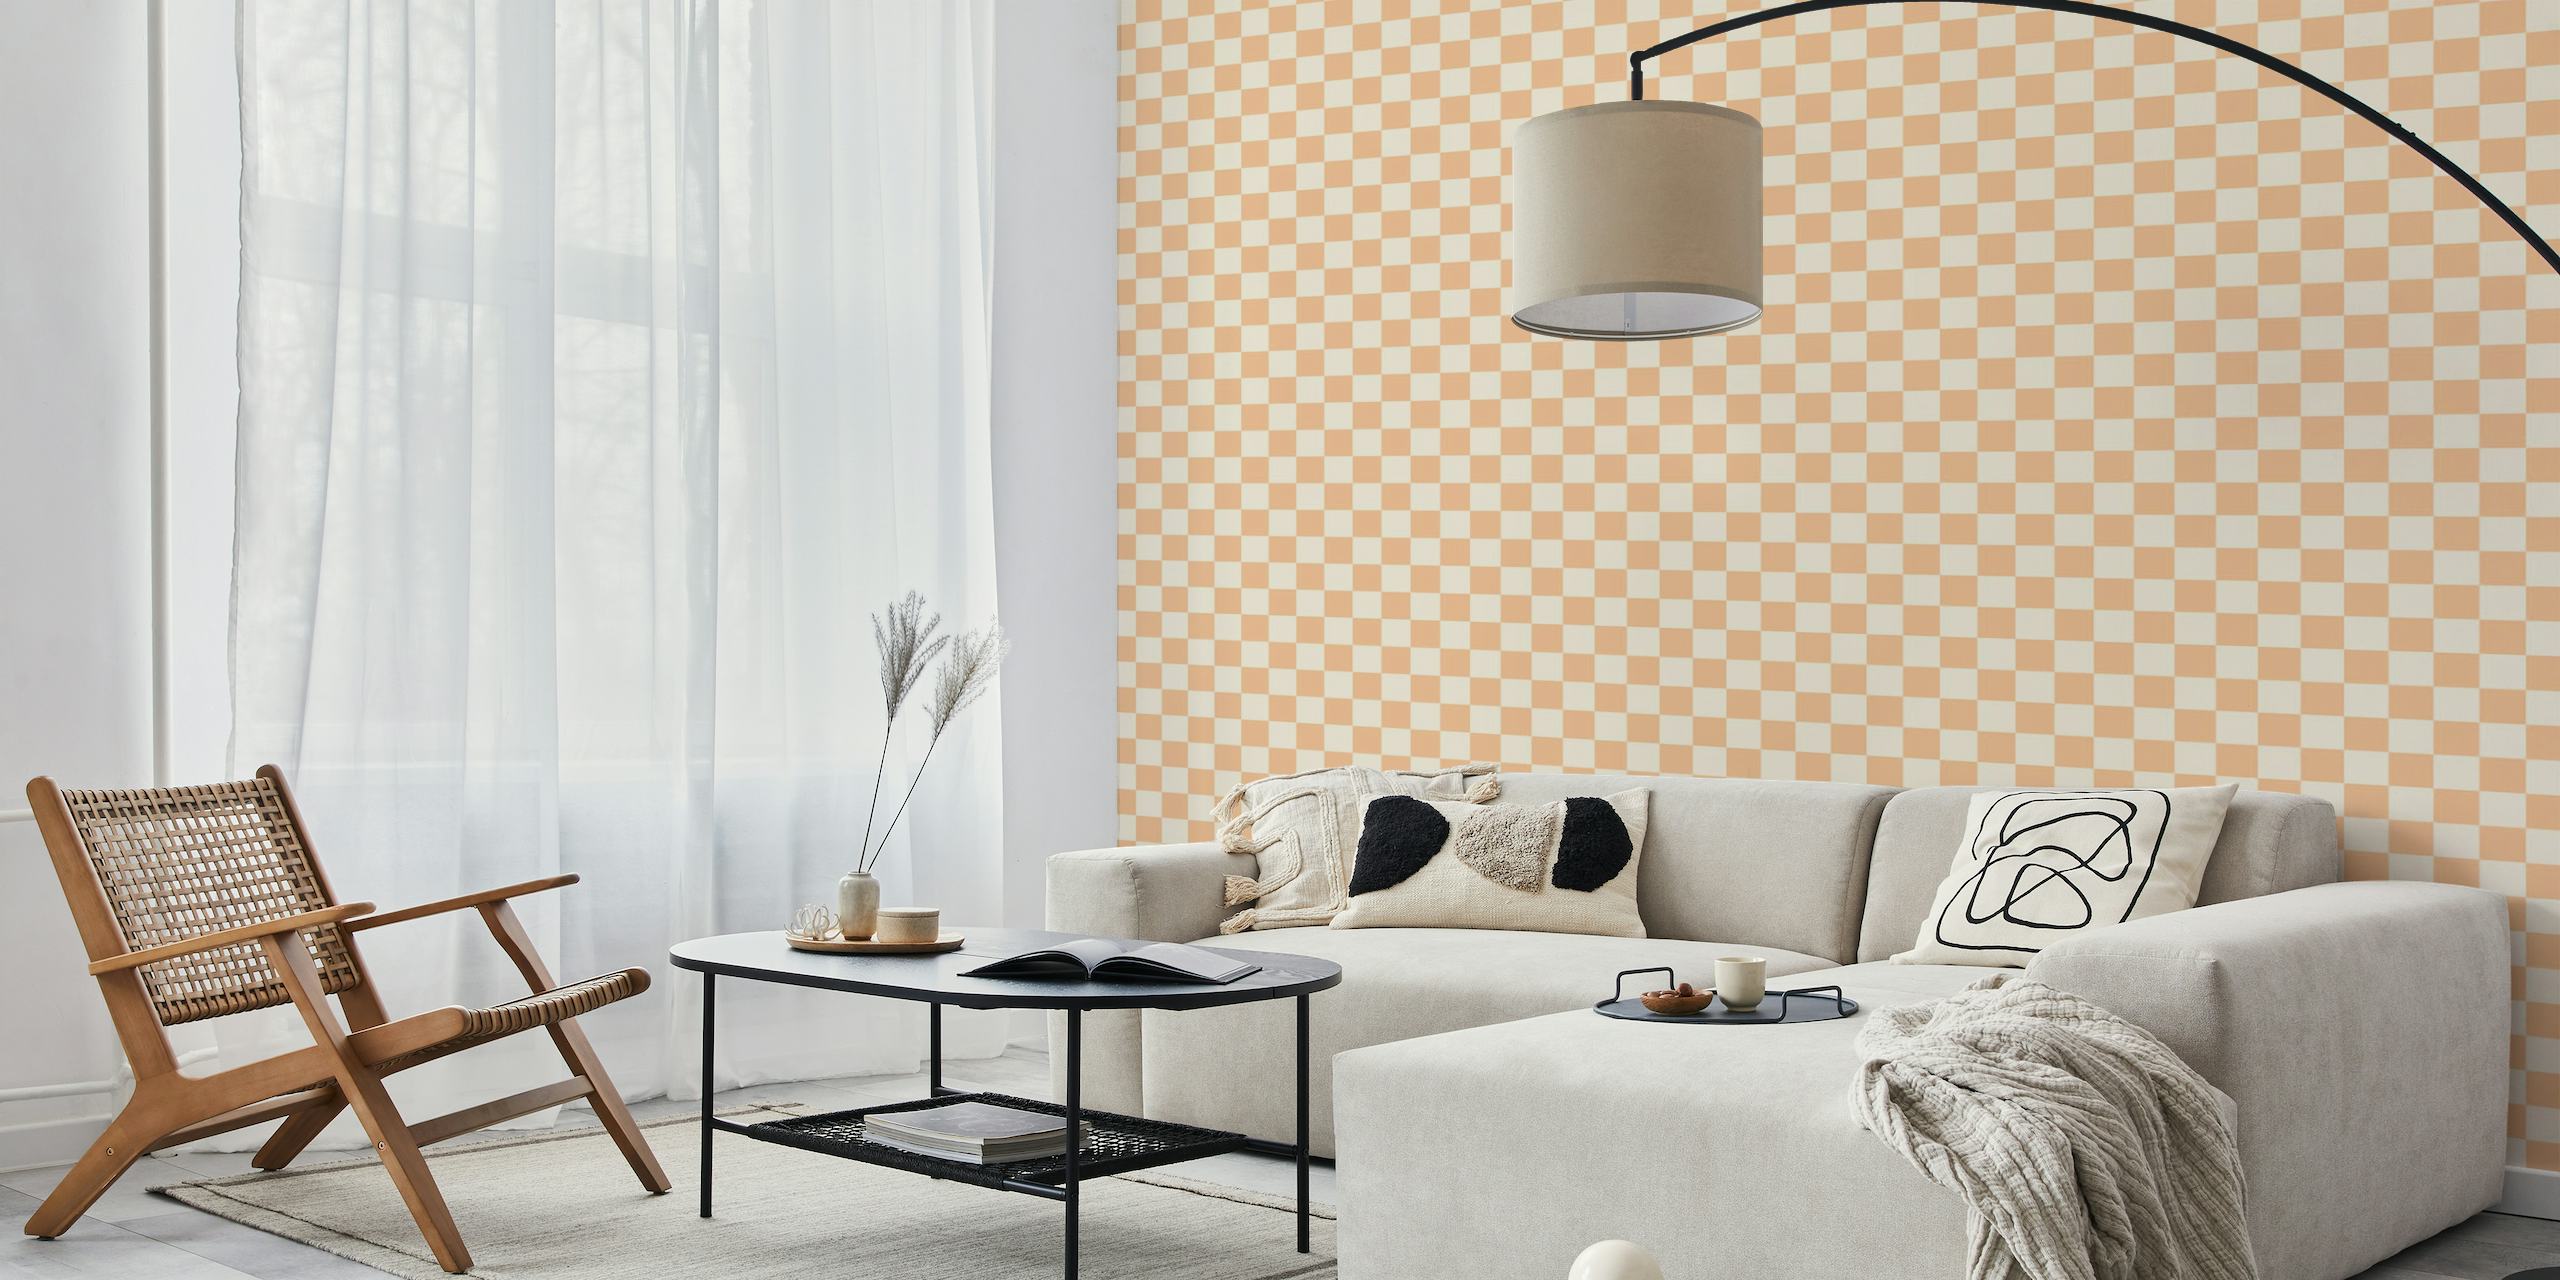 Checkerboard Normal Peach Fuzz - Pristine wallpaper